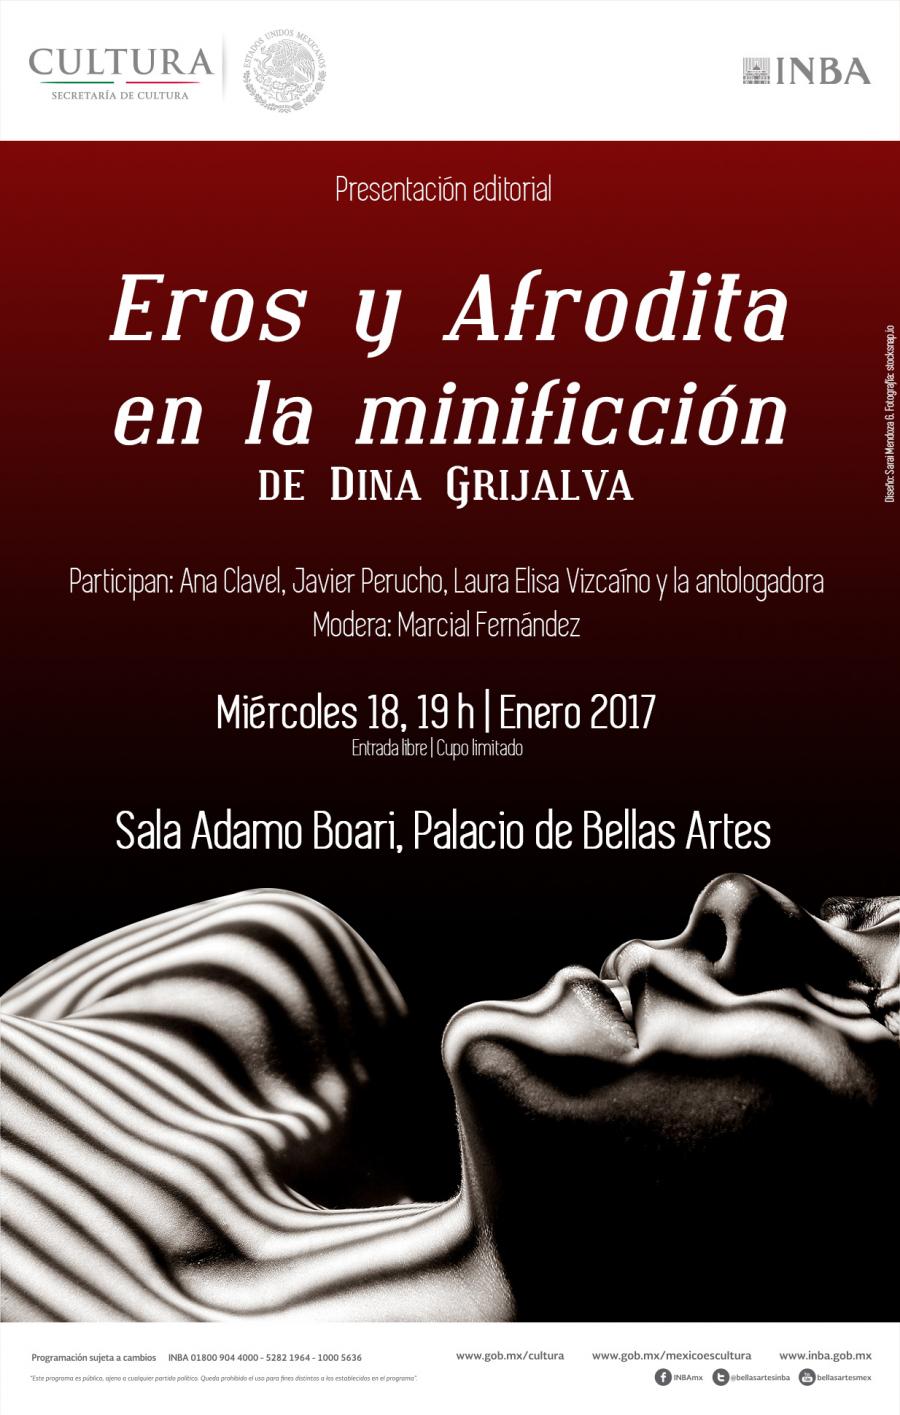 Eros y Afrodita en la minificciÃ³n, antologÃ­a compilada por Dina Grijalva